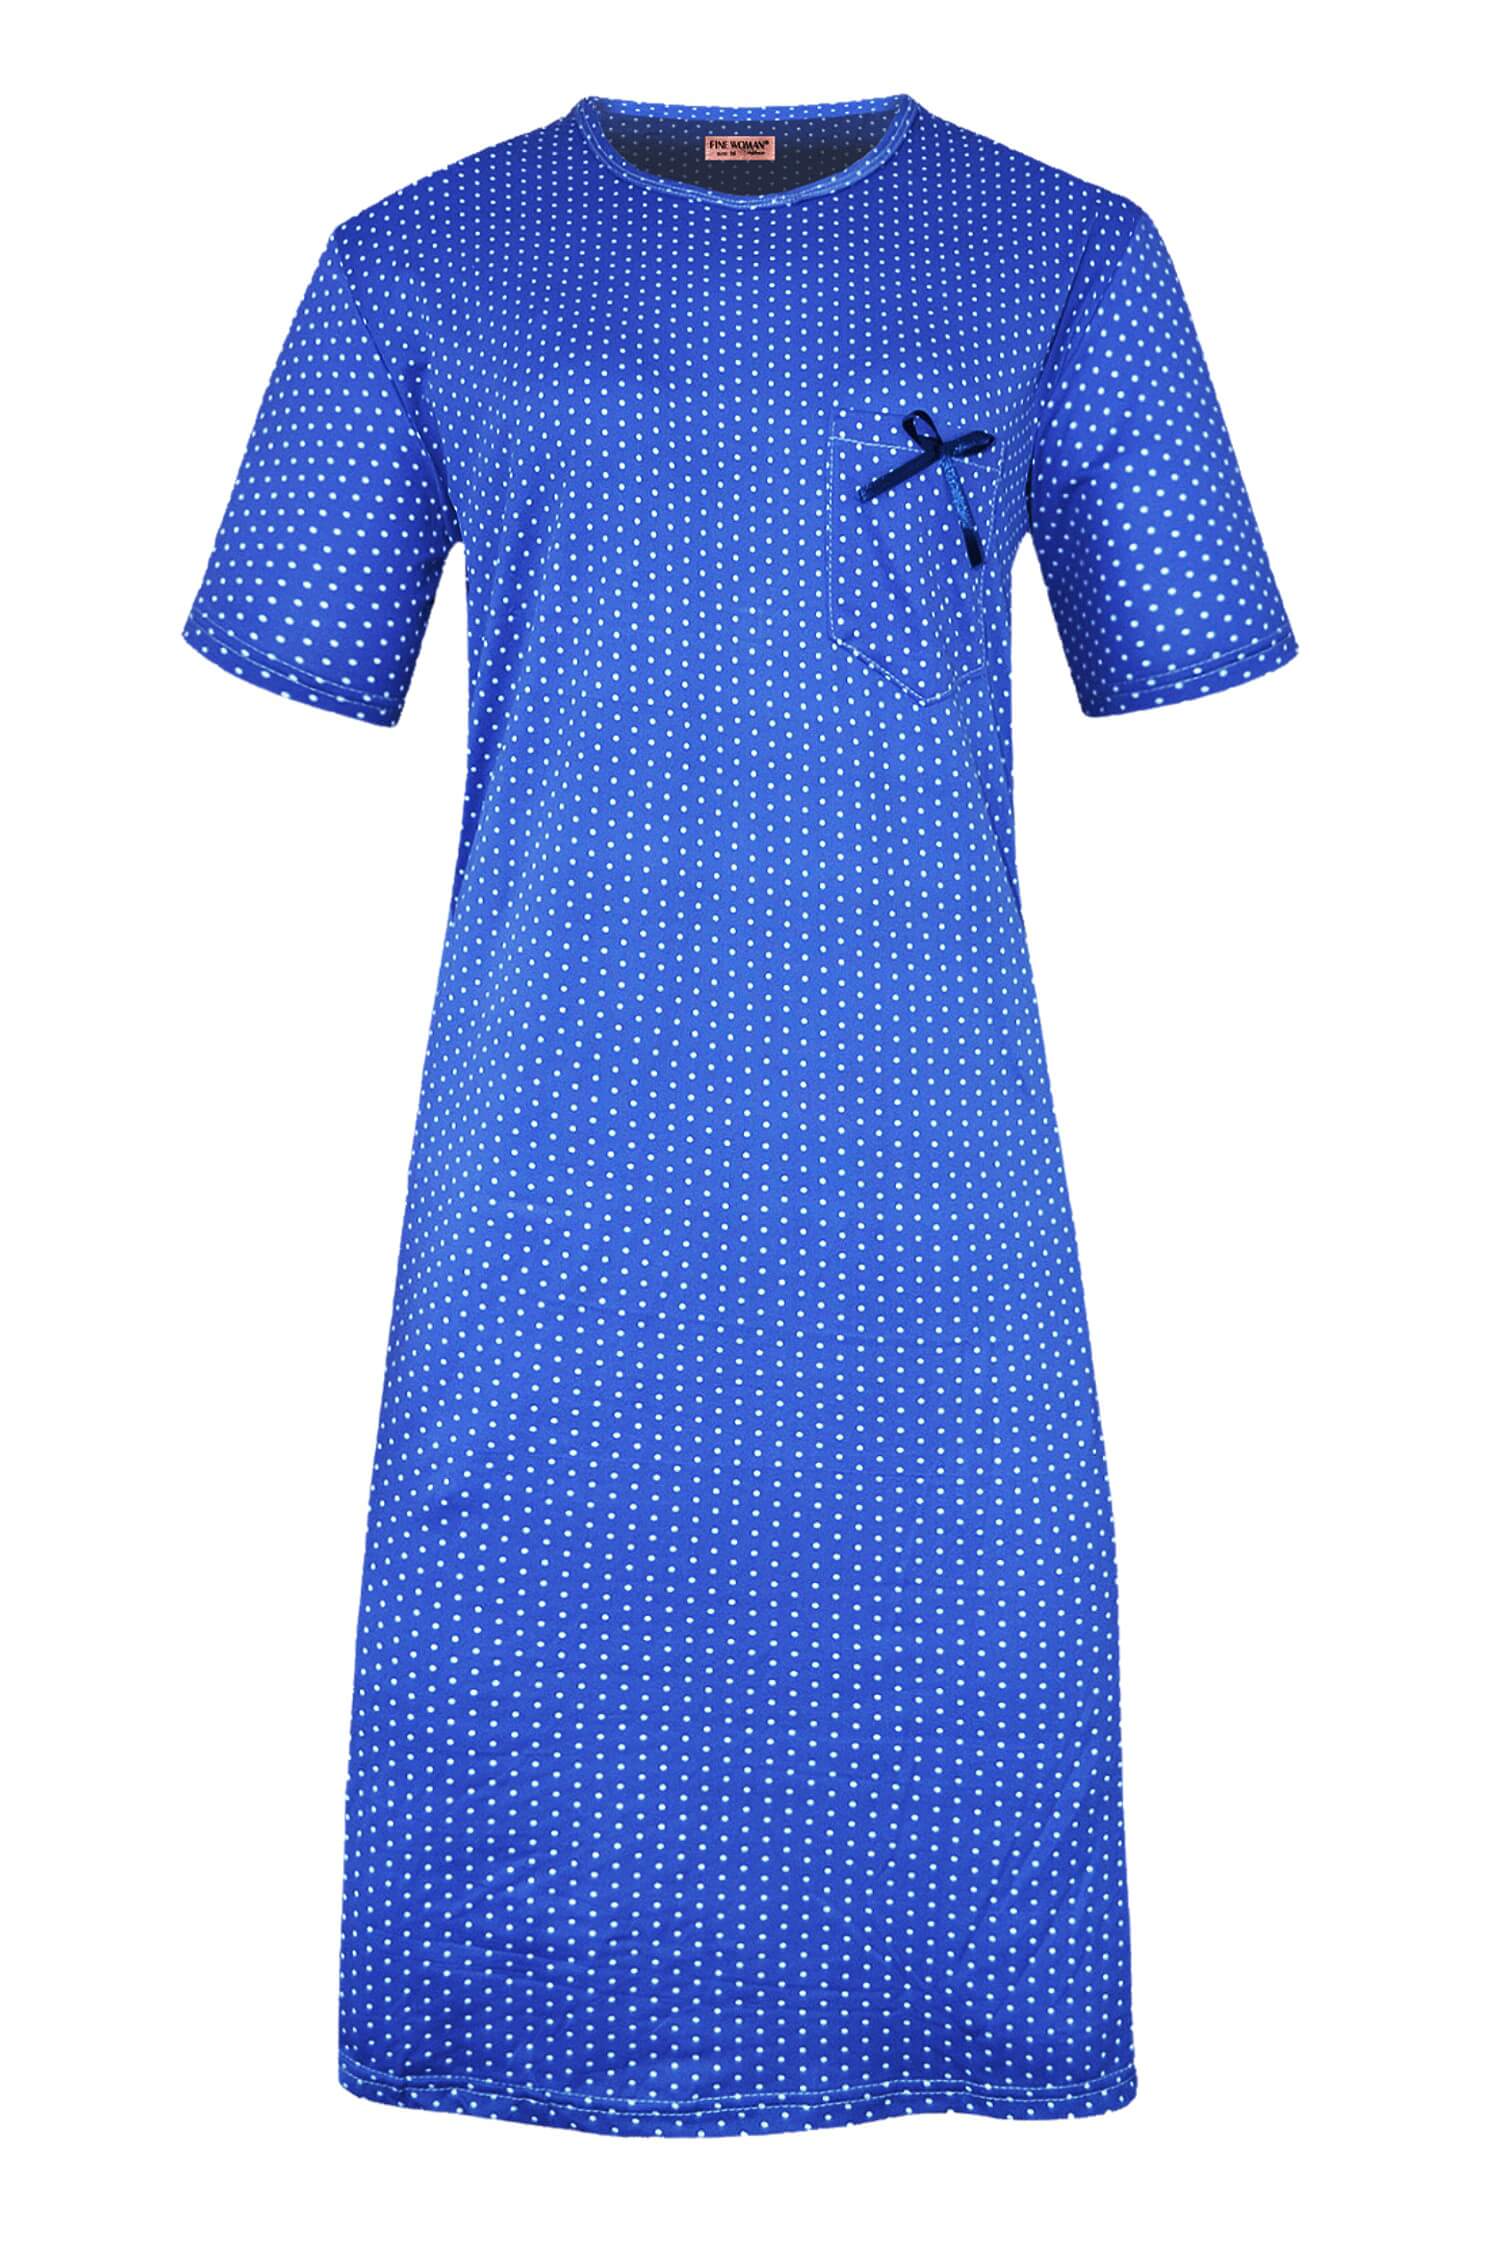 Monika dámská noční košile s puntíky 6533 L tmavě modrá